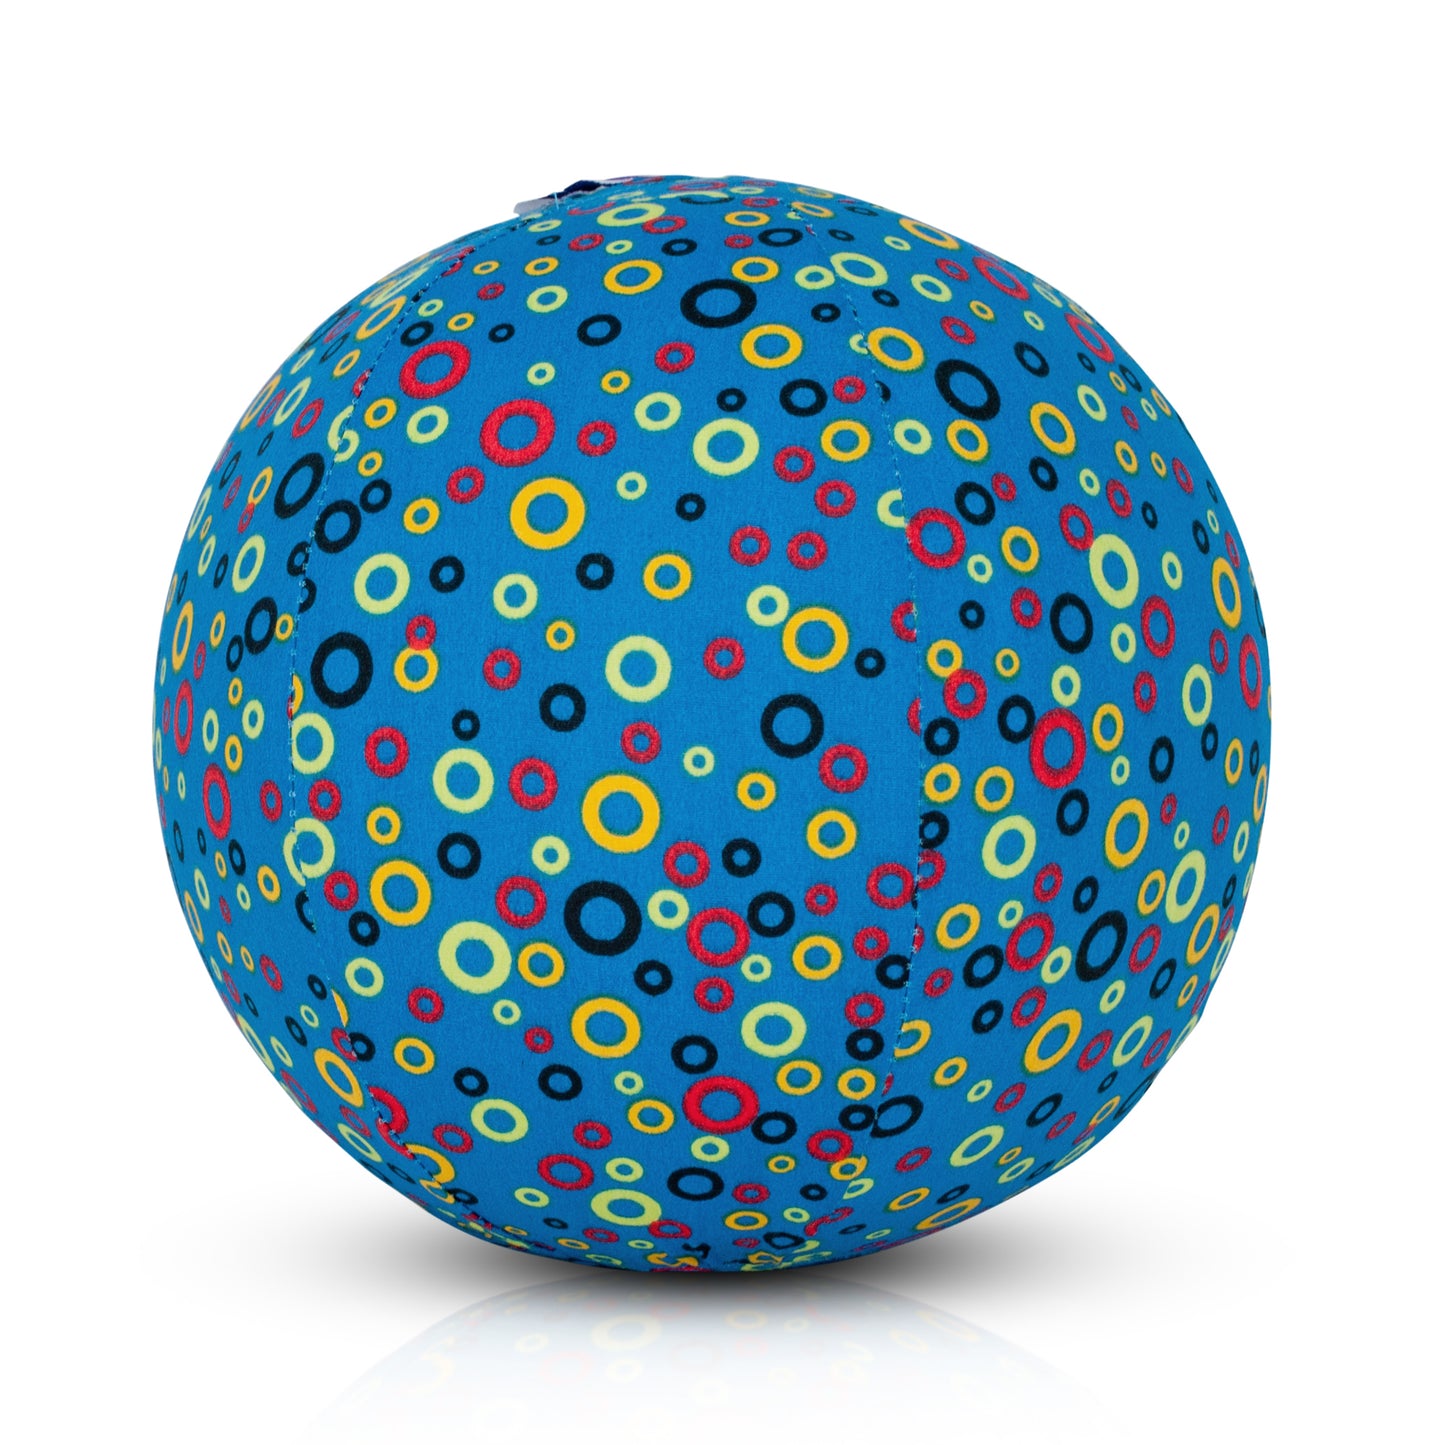 BubaBloon Circles Blue Cotton Balloon Cover Toy